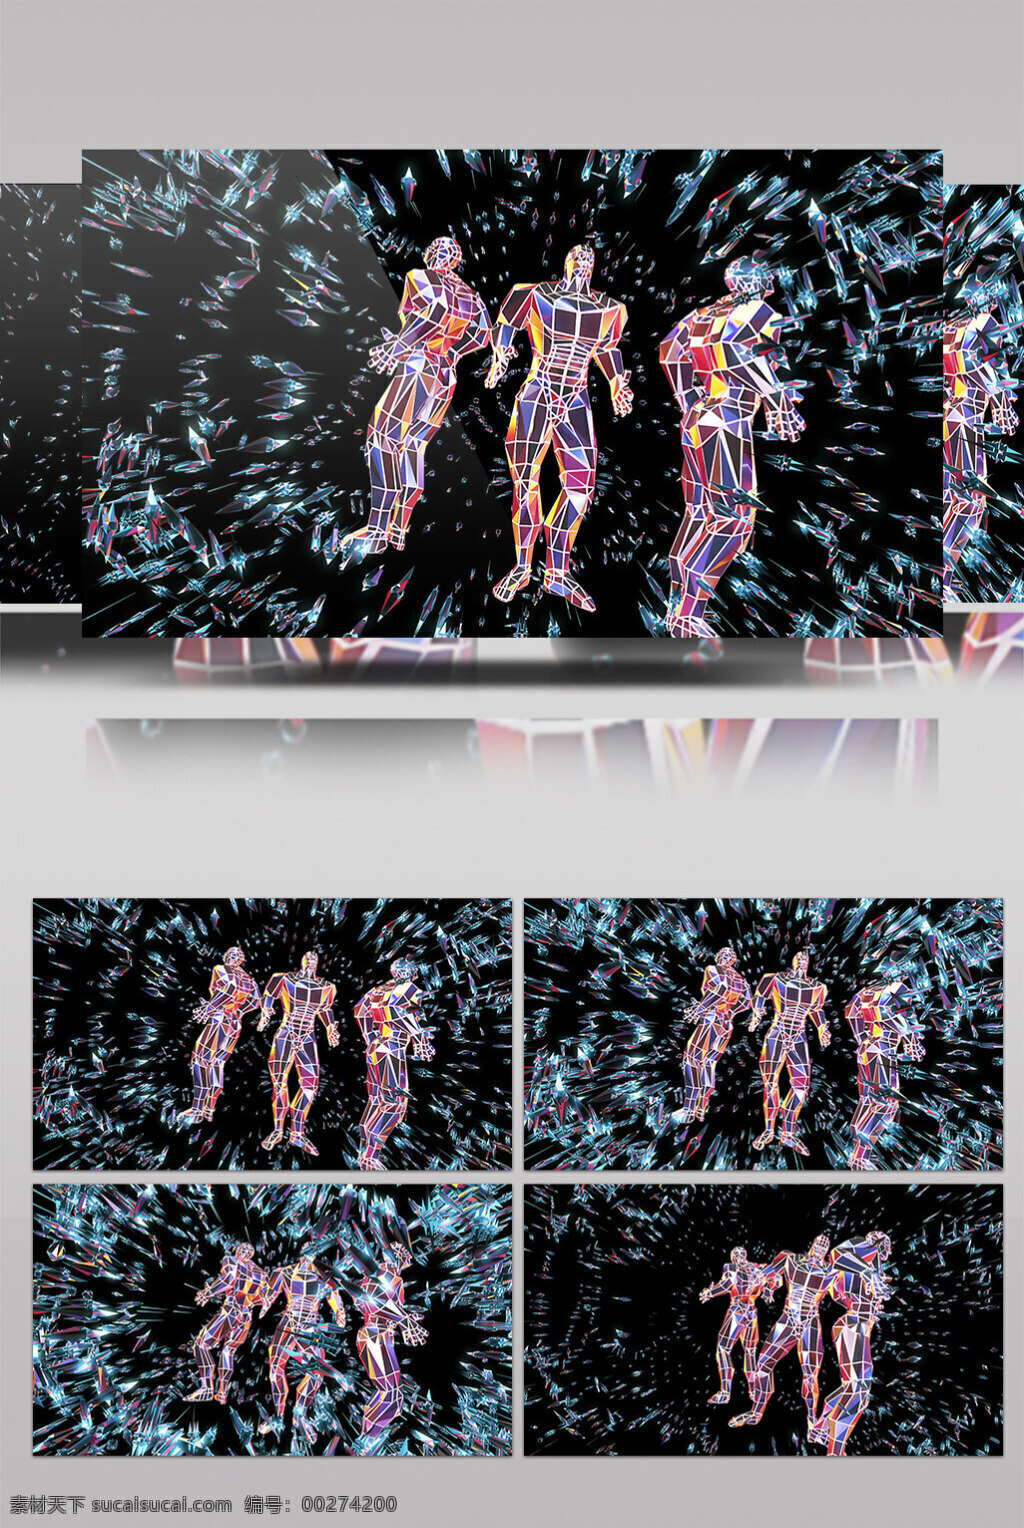 太空人 视频 斗舞 炫酷科技 华丽未来 3d视频素材 高清视频素材 特效视频素材